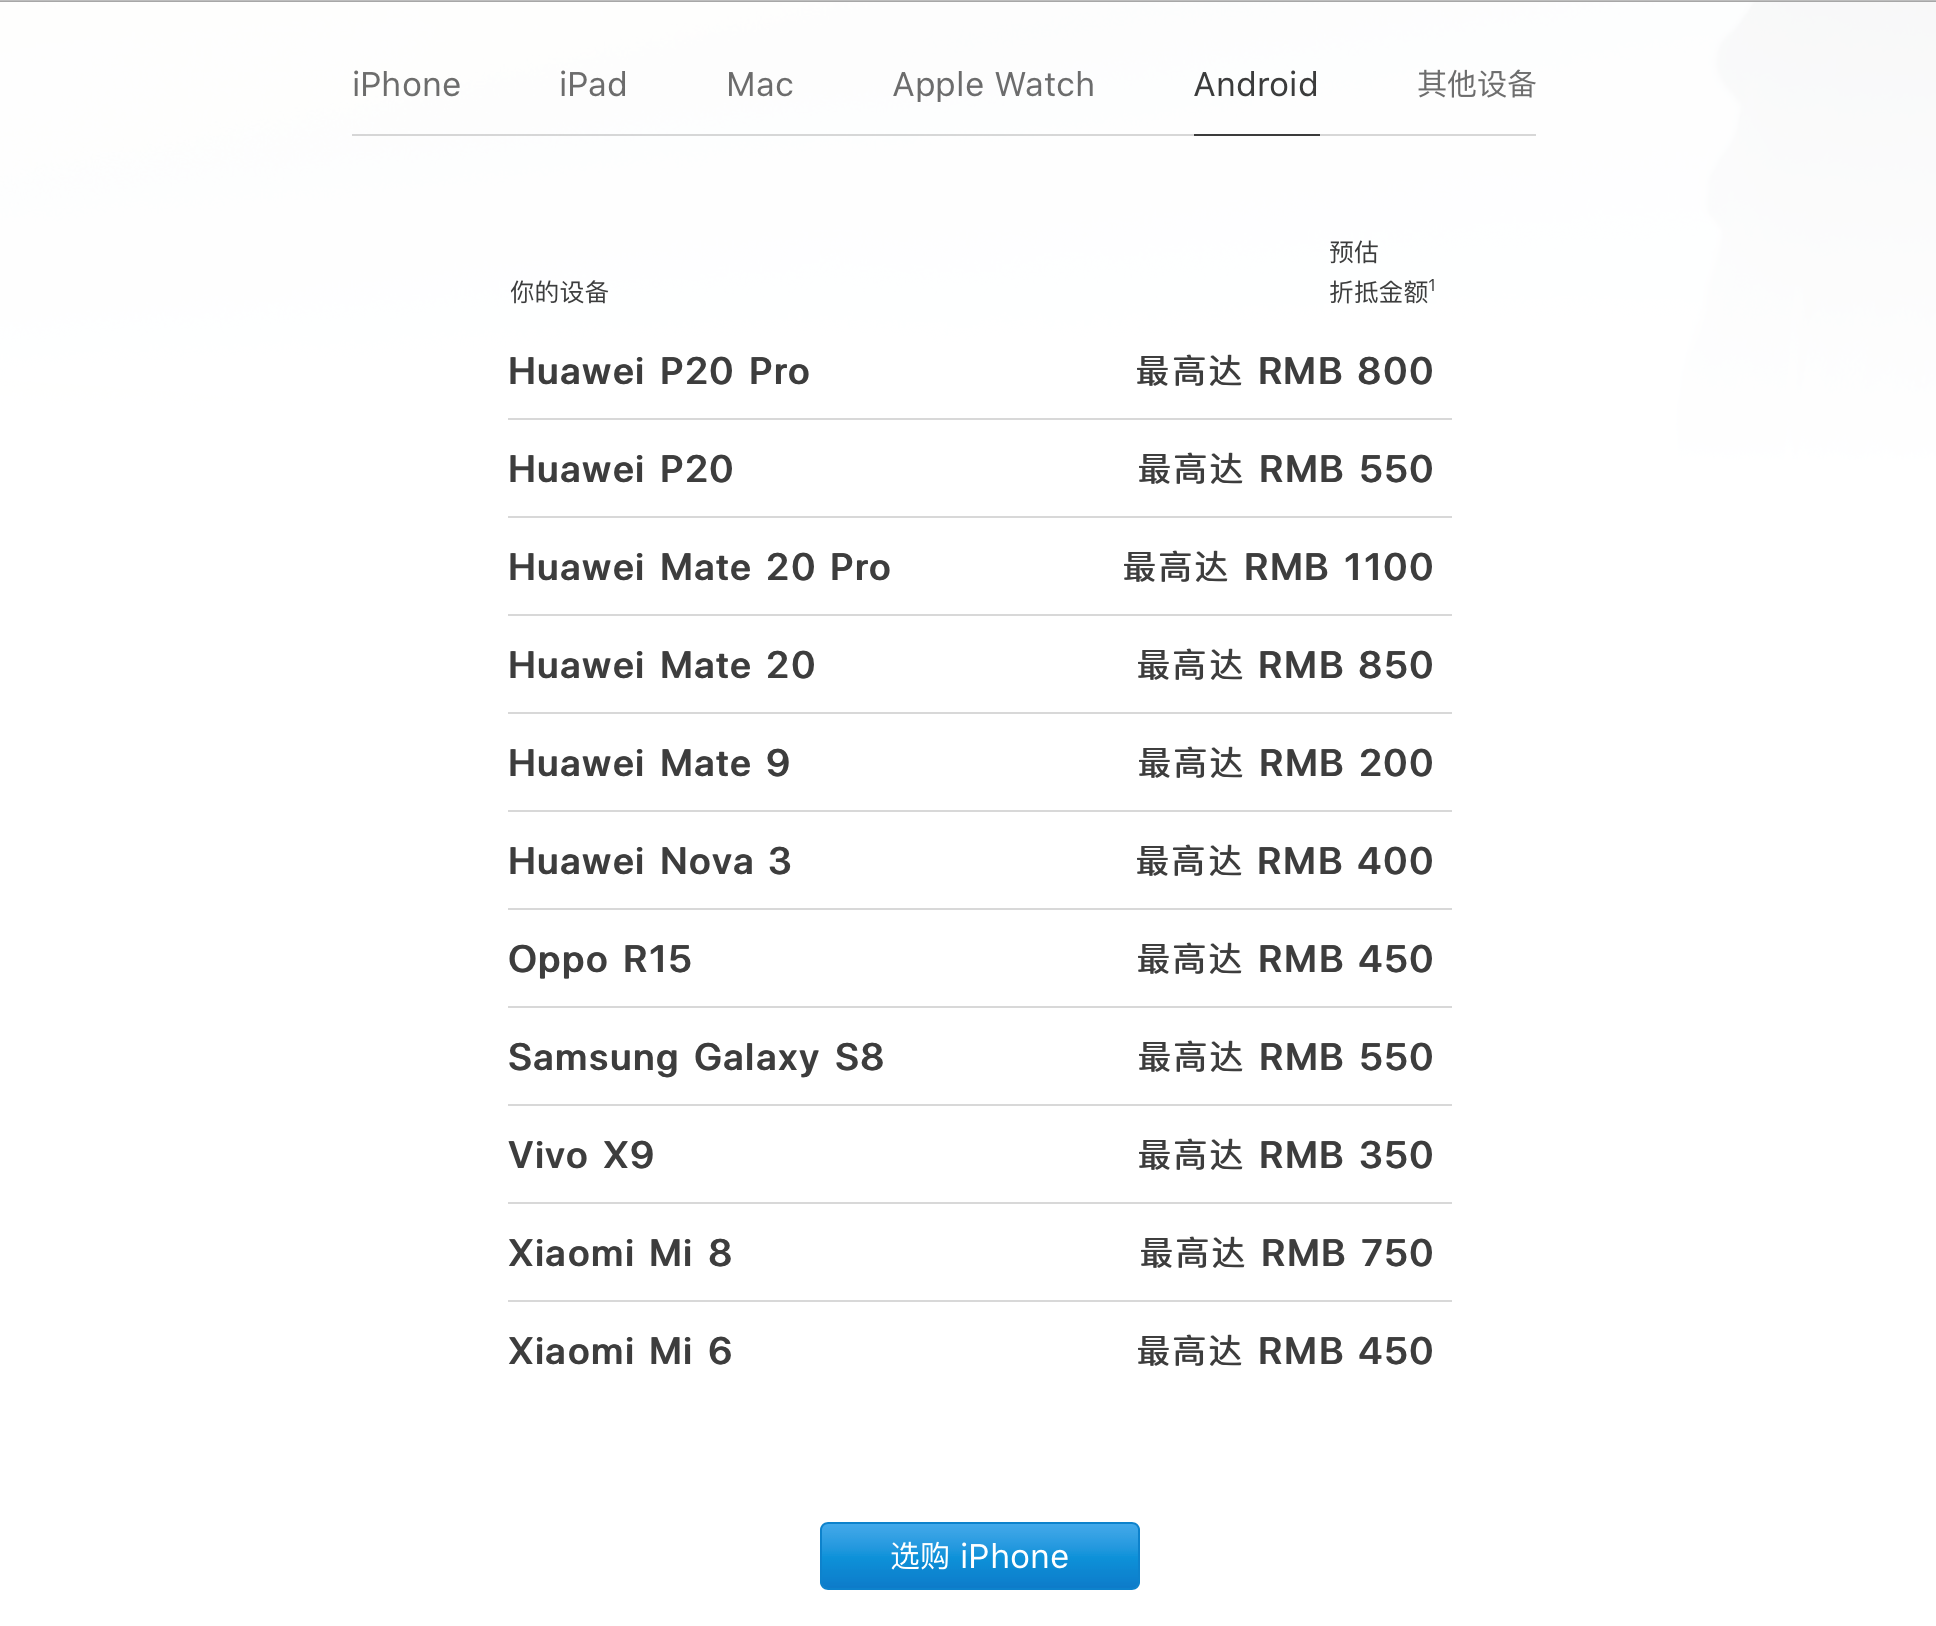 苹果更新「新旧置换」方案 华为公司 Mate 20 Pro 最大折抵 1100 元